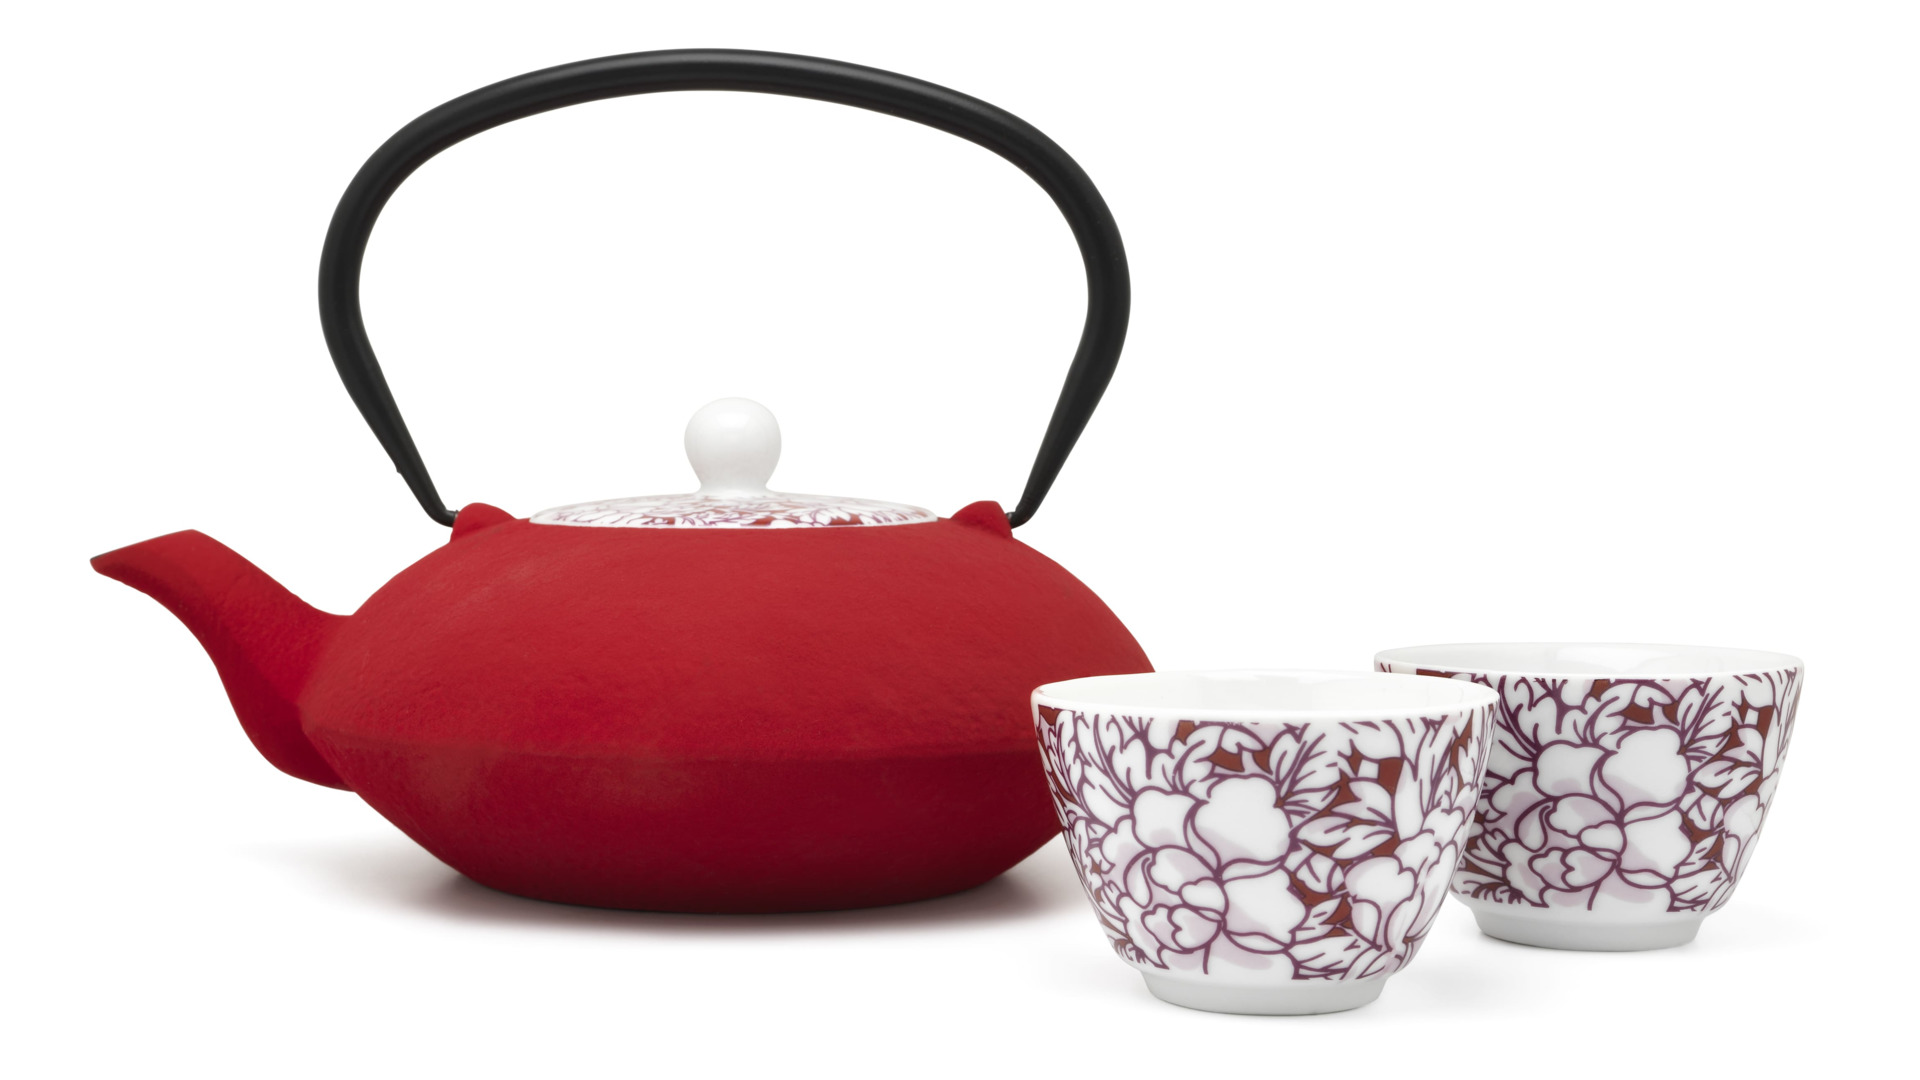 Чайник заварочный Bredemeijer Yantai 1,2 л, с фильтром, чугун, с фарфоровой крышкой, красный